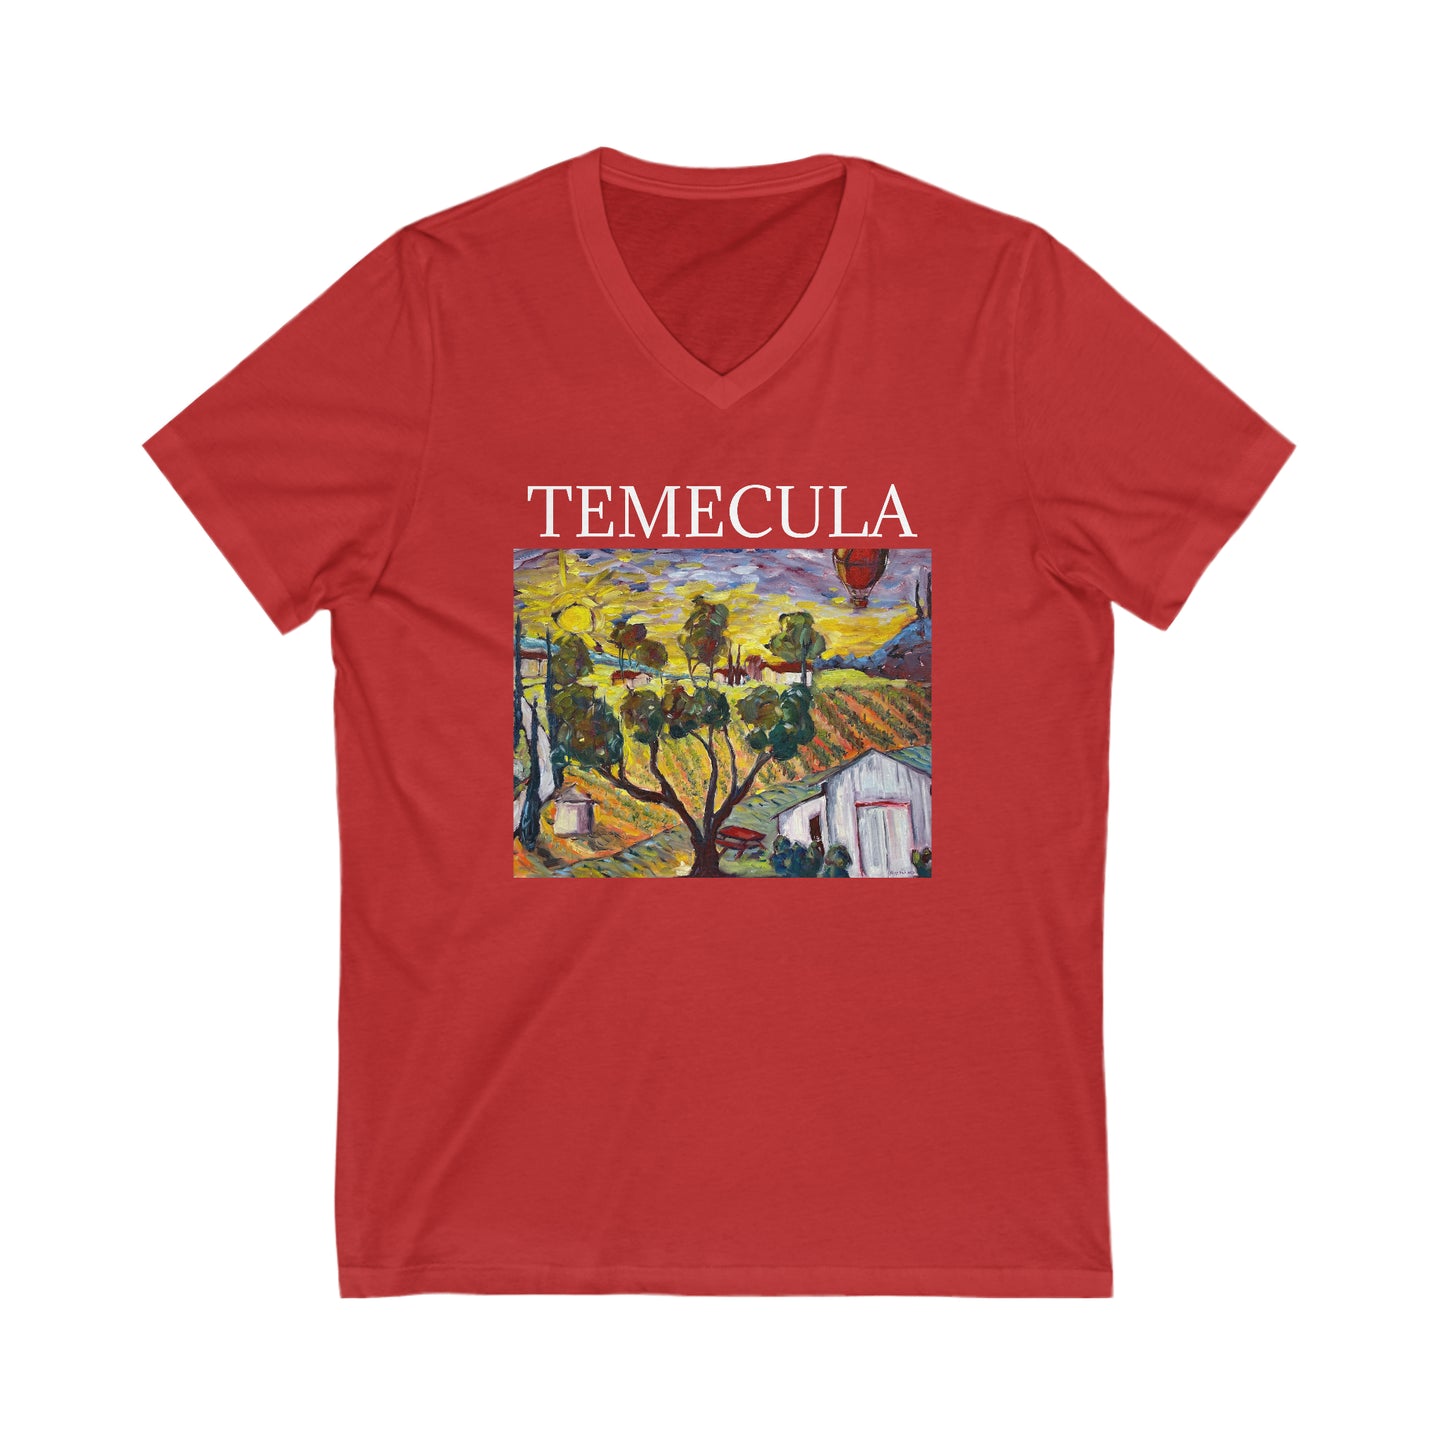 Ultimate Sunrise "TEMECULA" -Unisex Jersey Short Sleeve V-Neck Tee